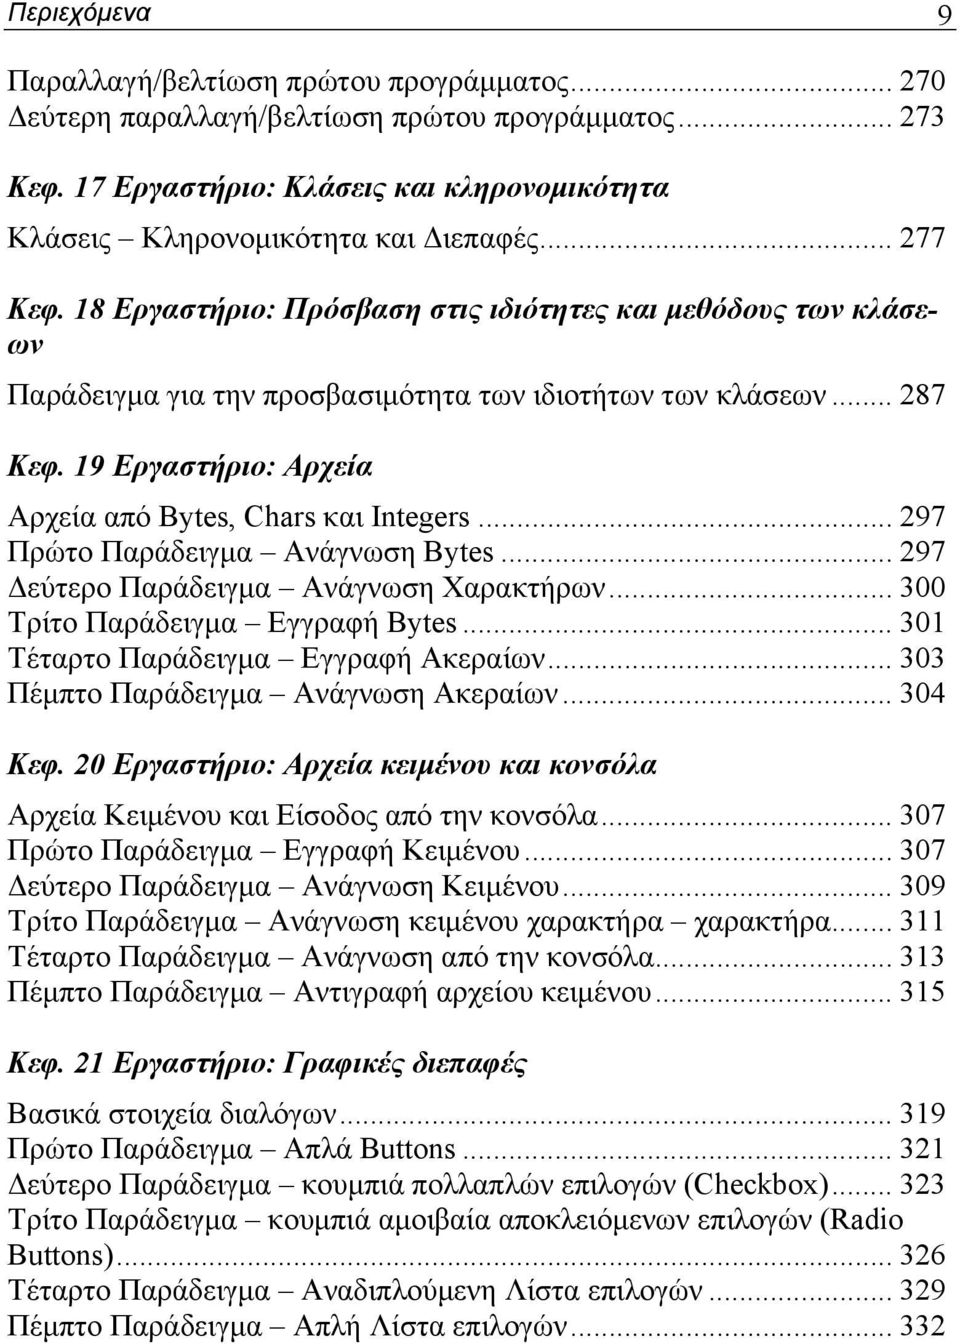 19 Εργαστήριο: Αρχεία Αρχεία από Bytes, Chars και Integers... 297 Πρώτο Παράδειγμα Ανάγνωση Bytes... 297 Δεύτερο Παράδειγμα Ανάγνωση Χαρακτήρων... 300 Τρίτο Παράδειγμα Εγγραφή Bytes.